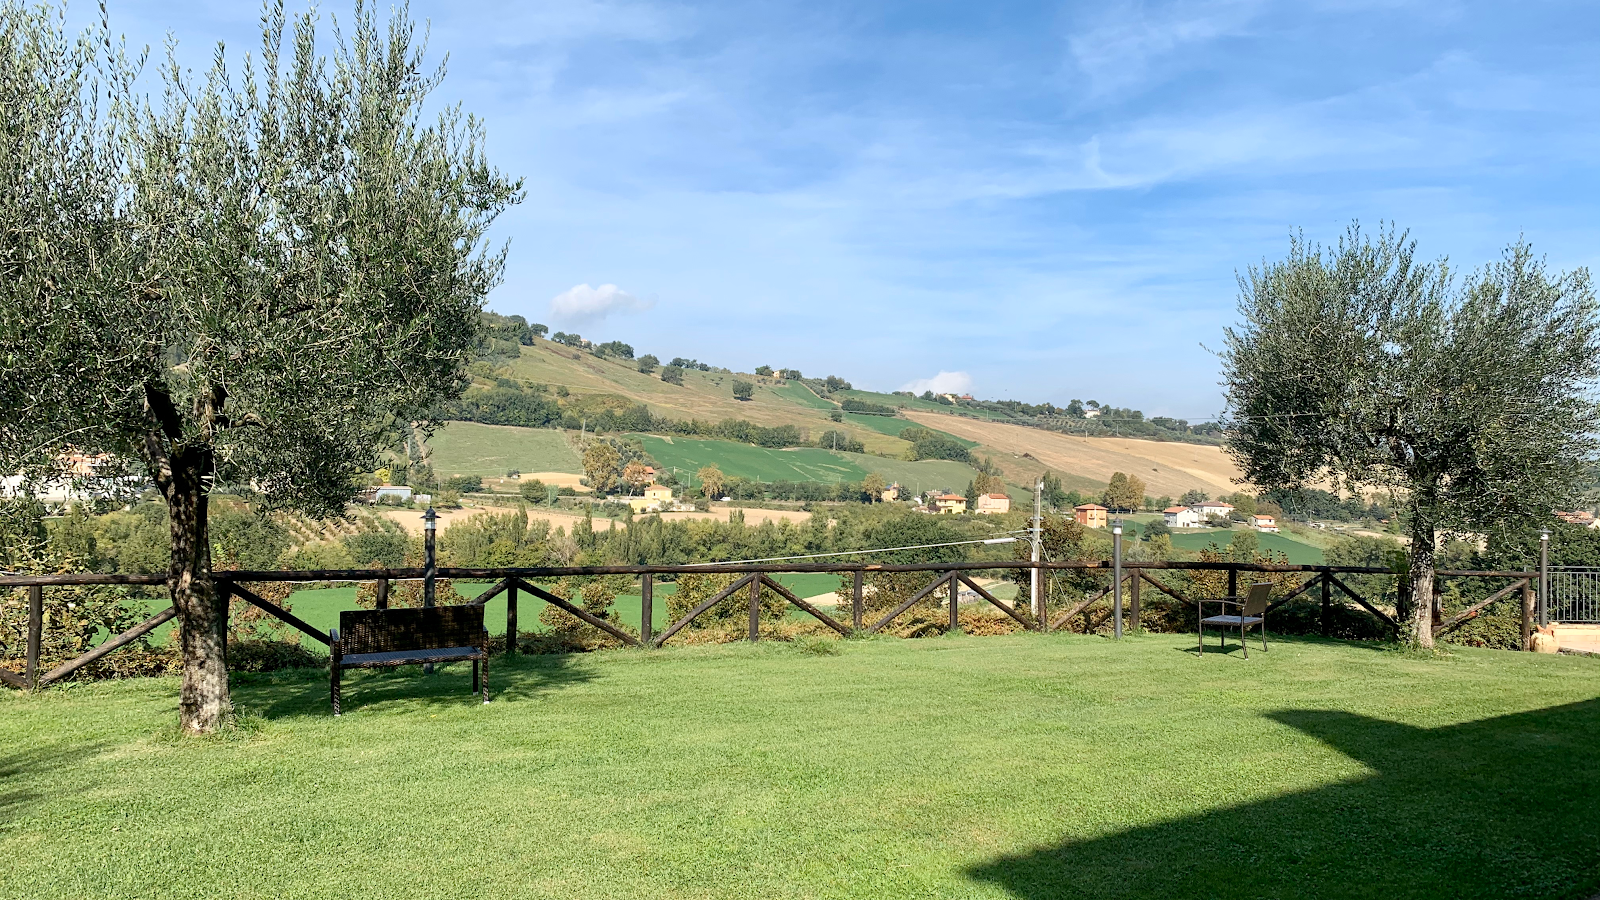 Foto di Locanda Montelippo - Ristorante e Agriturismo con piscina nelle colline marchigiane vicino a Pesaro e Urbino